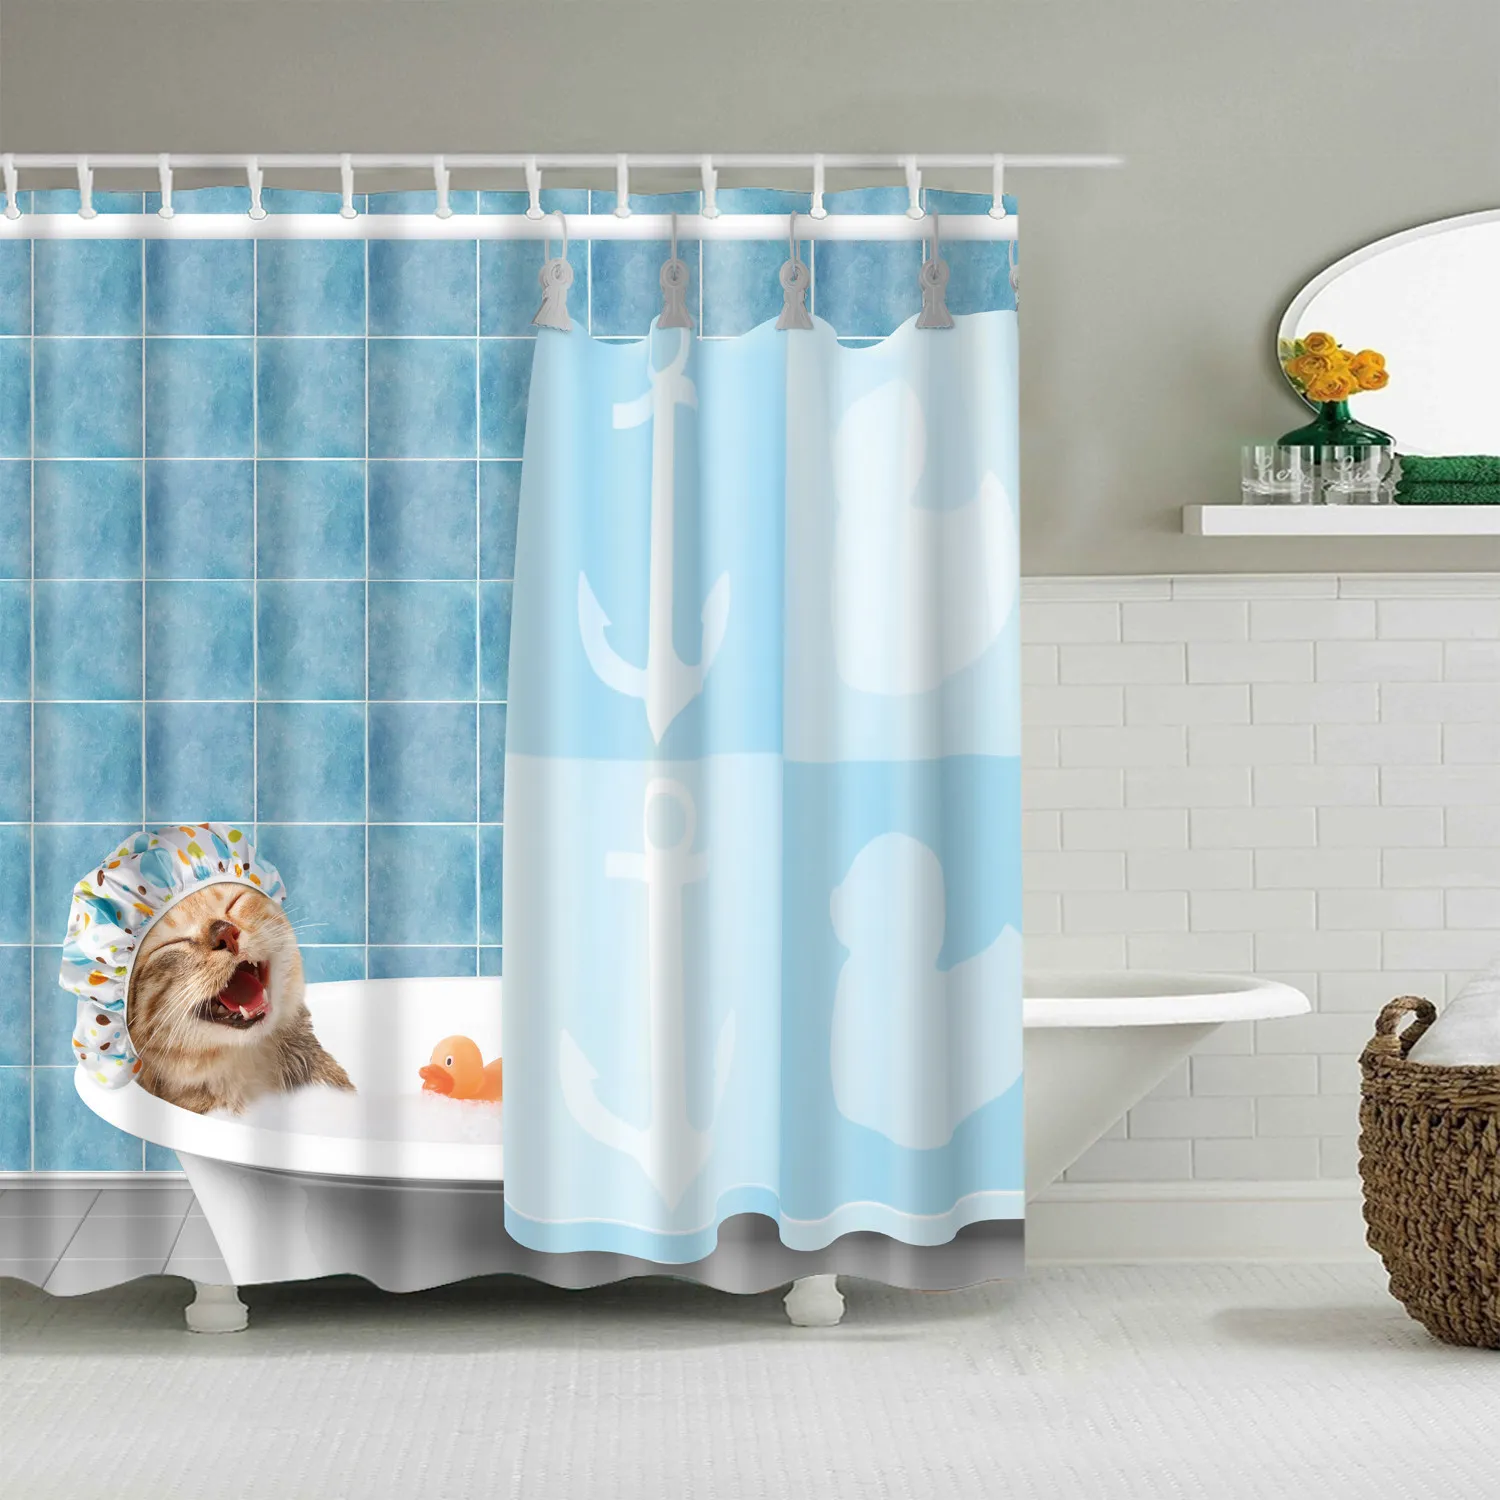 Rideau de bain animal bleu imperméable pour salle de bain Rideaux de douche imprimés animaux 3D mignons rideau de salle de bain cortina de bano 2011289035588